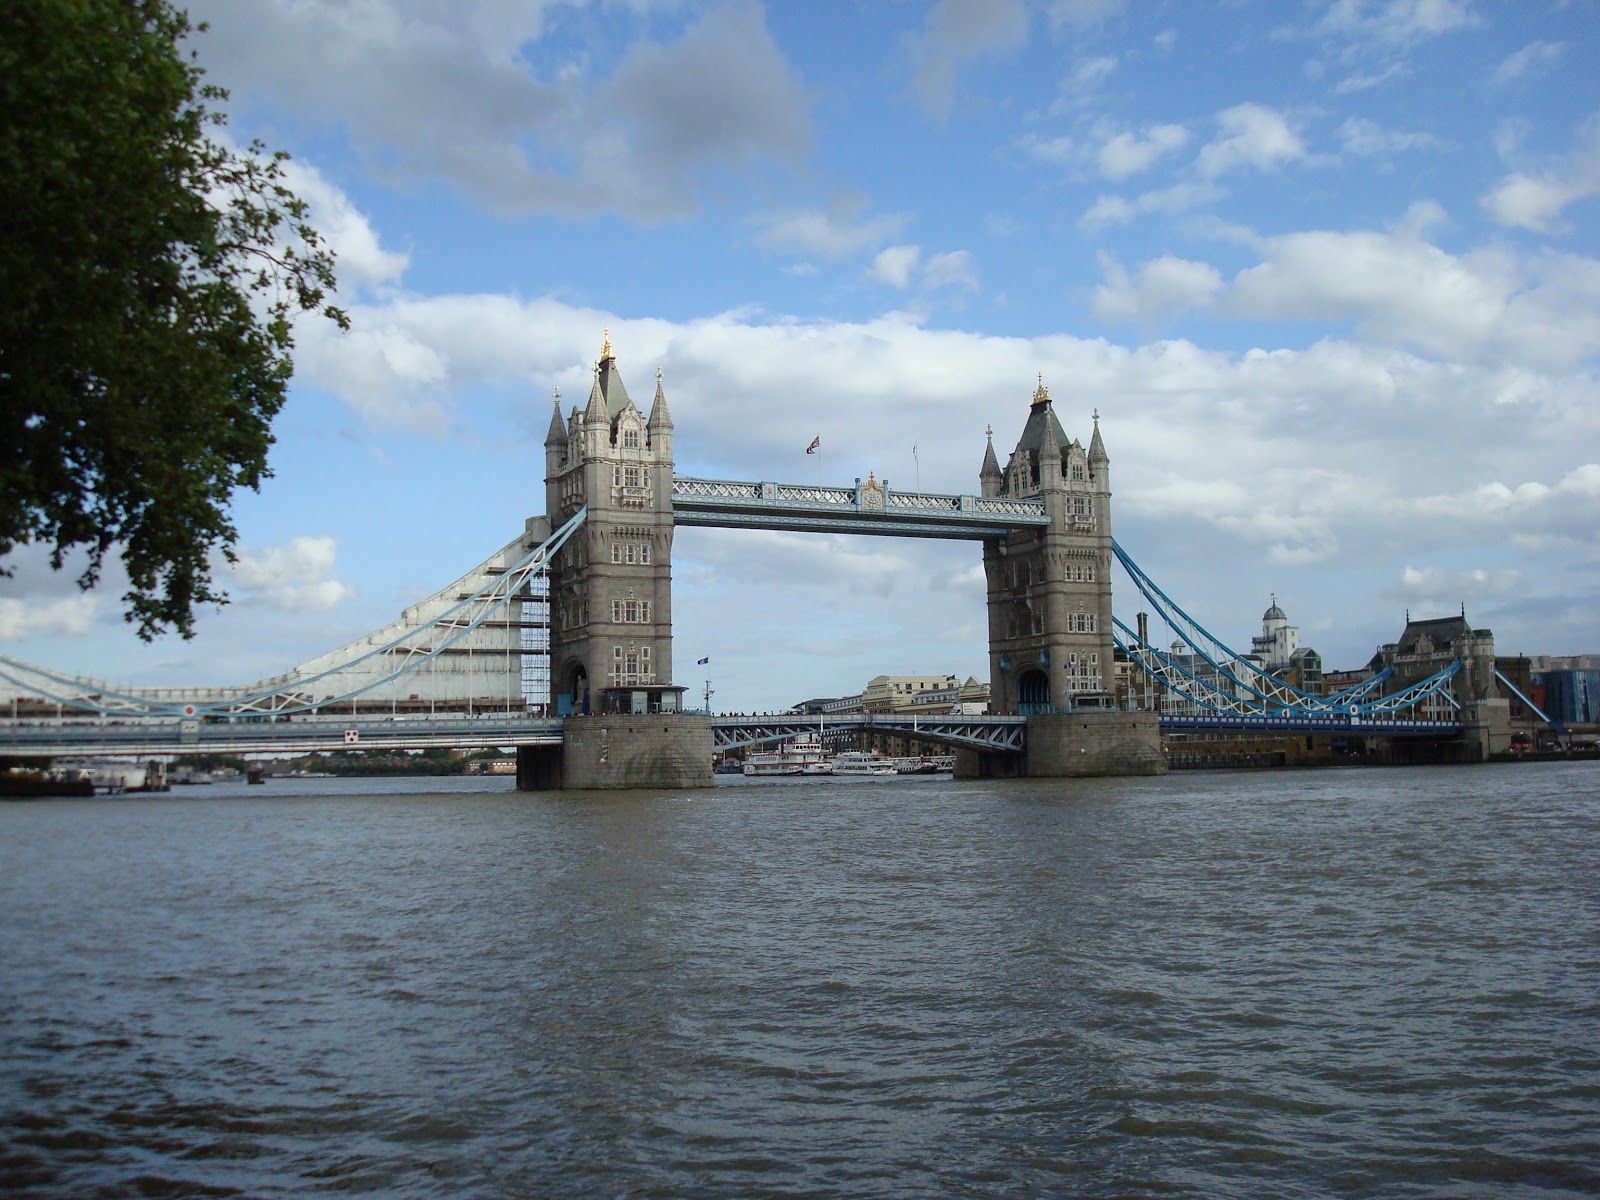 Visionphotorama: La prison et le pont de Londres / London prison and